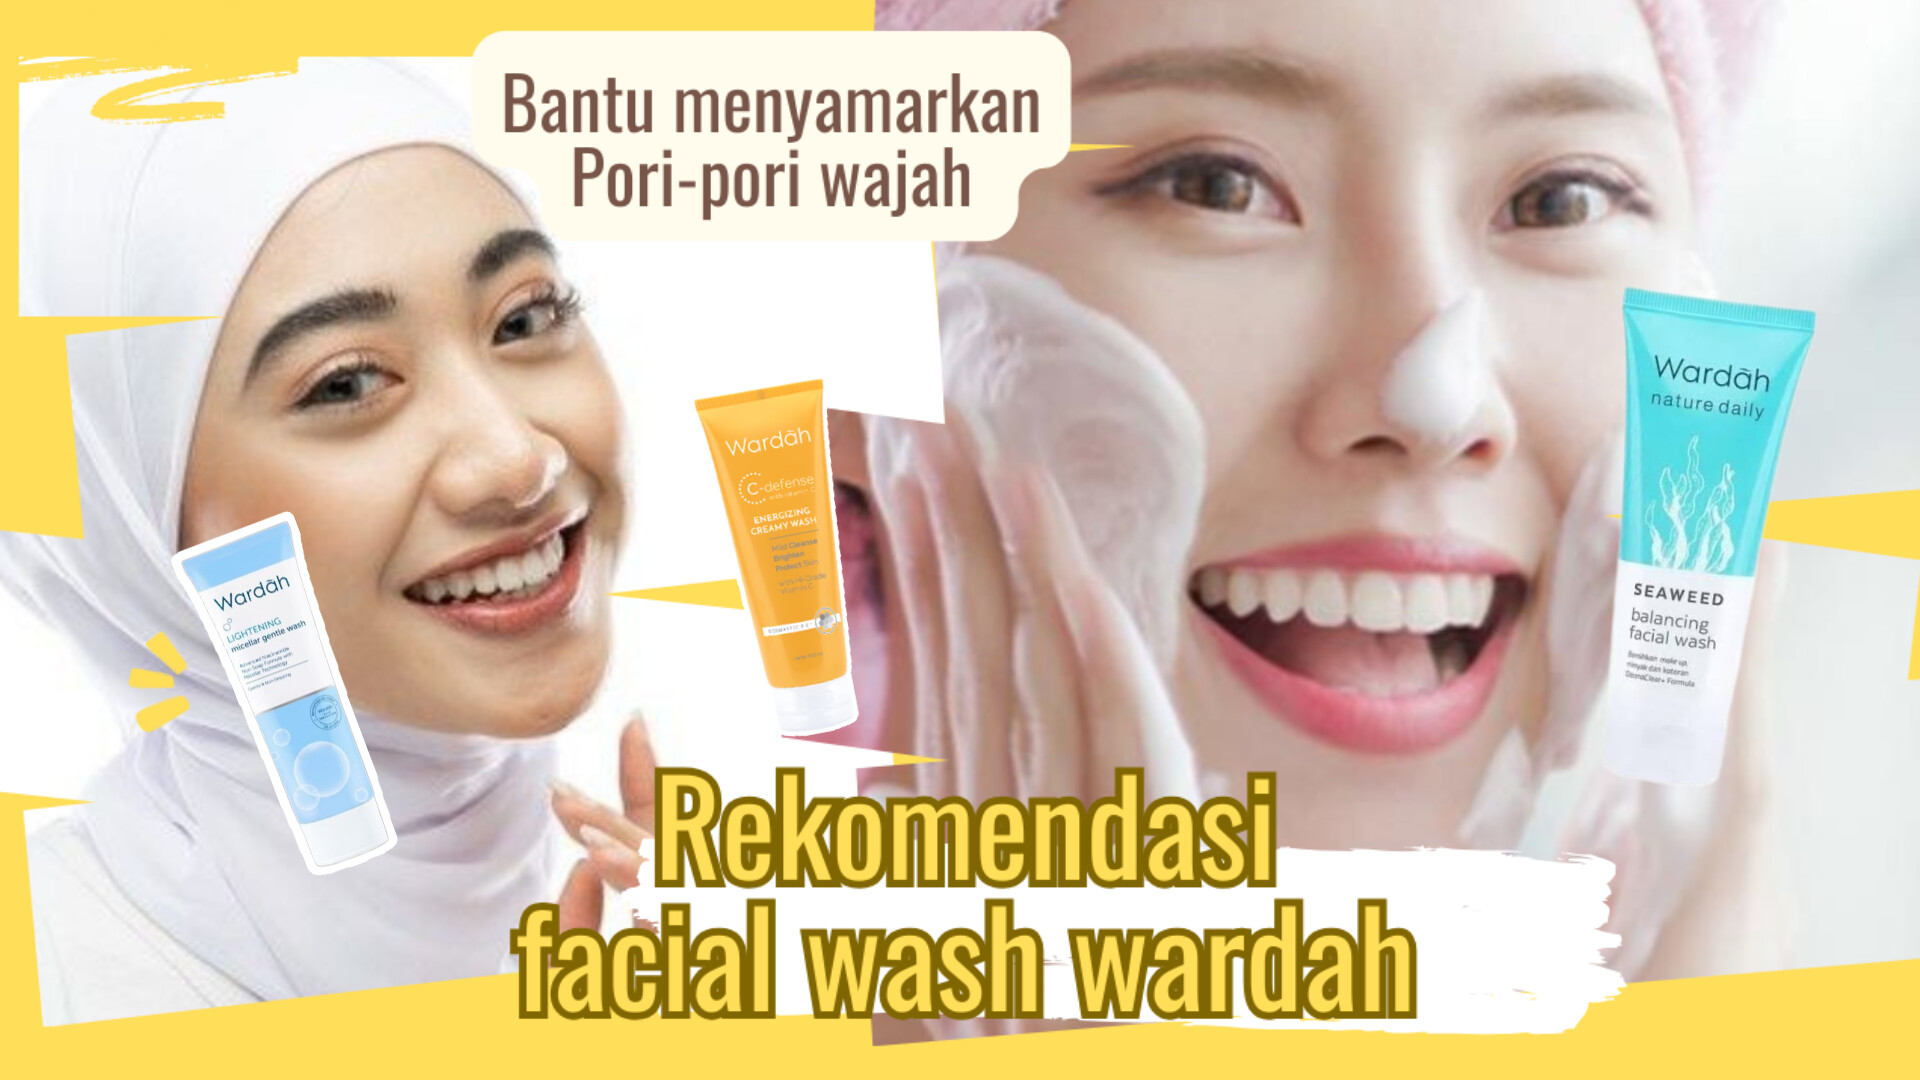 5 Rekomendasi Facial Wash Wardah yang Ampuh Menyamarkan Pori-pori Wajah, Bikin Kulit Mulus dan Glowing